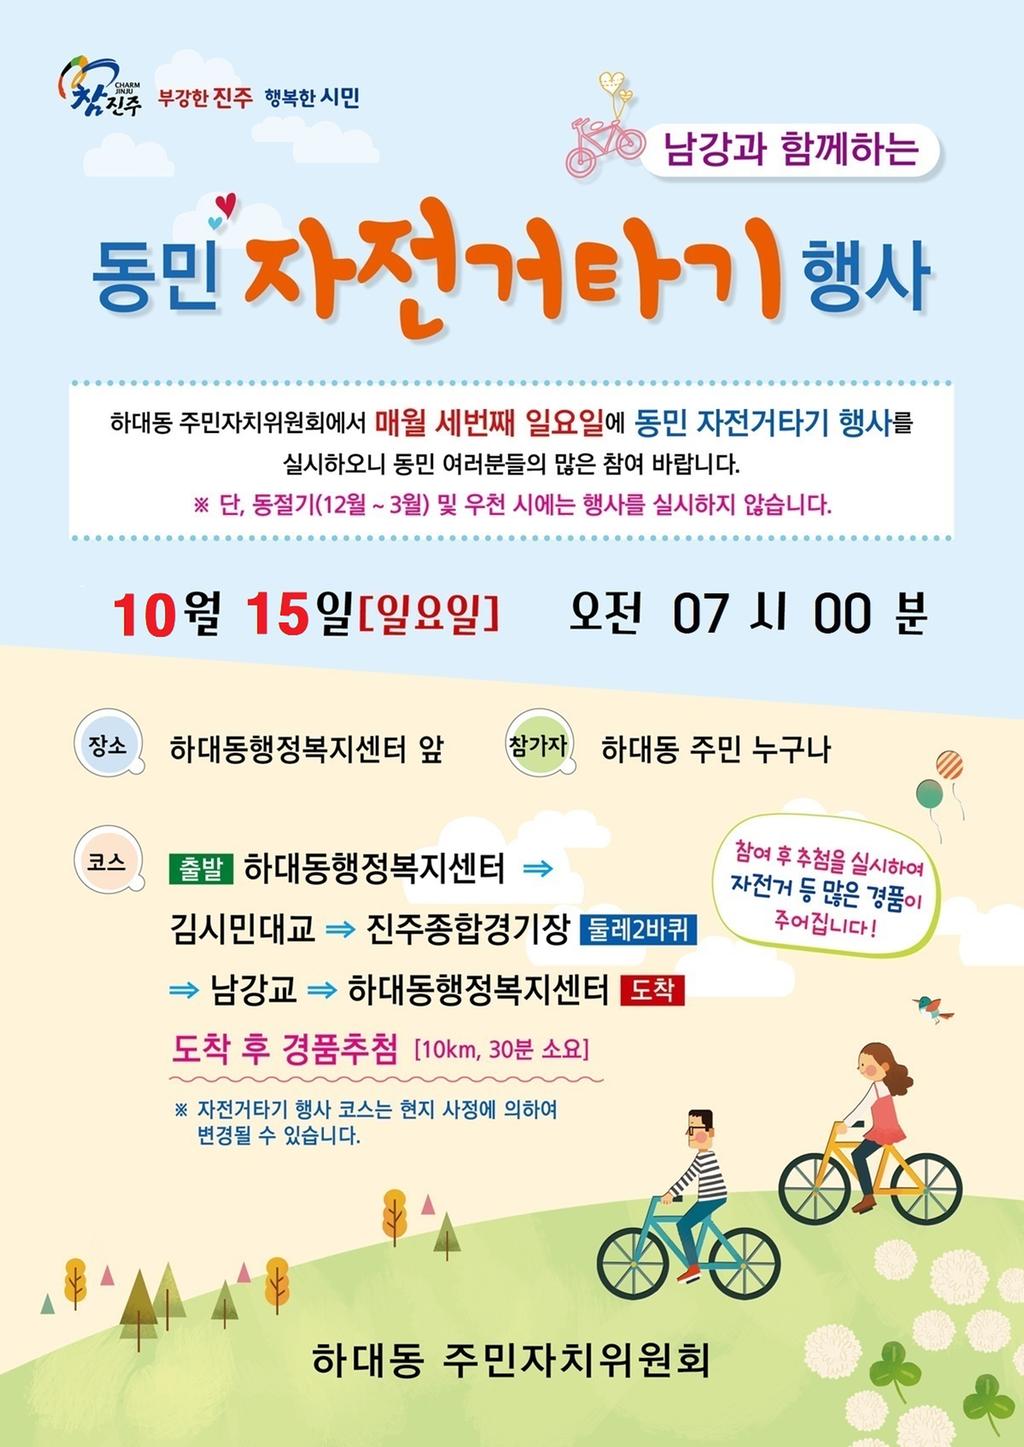 자전거타기 행사 포스터